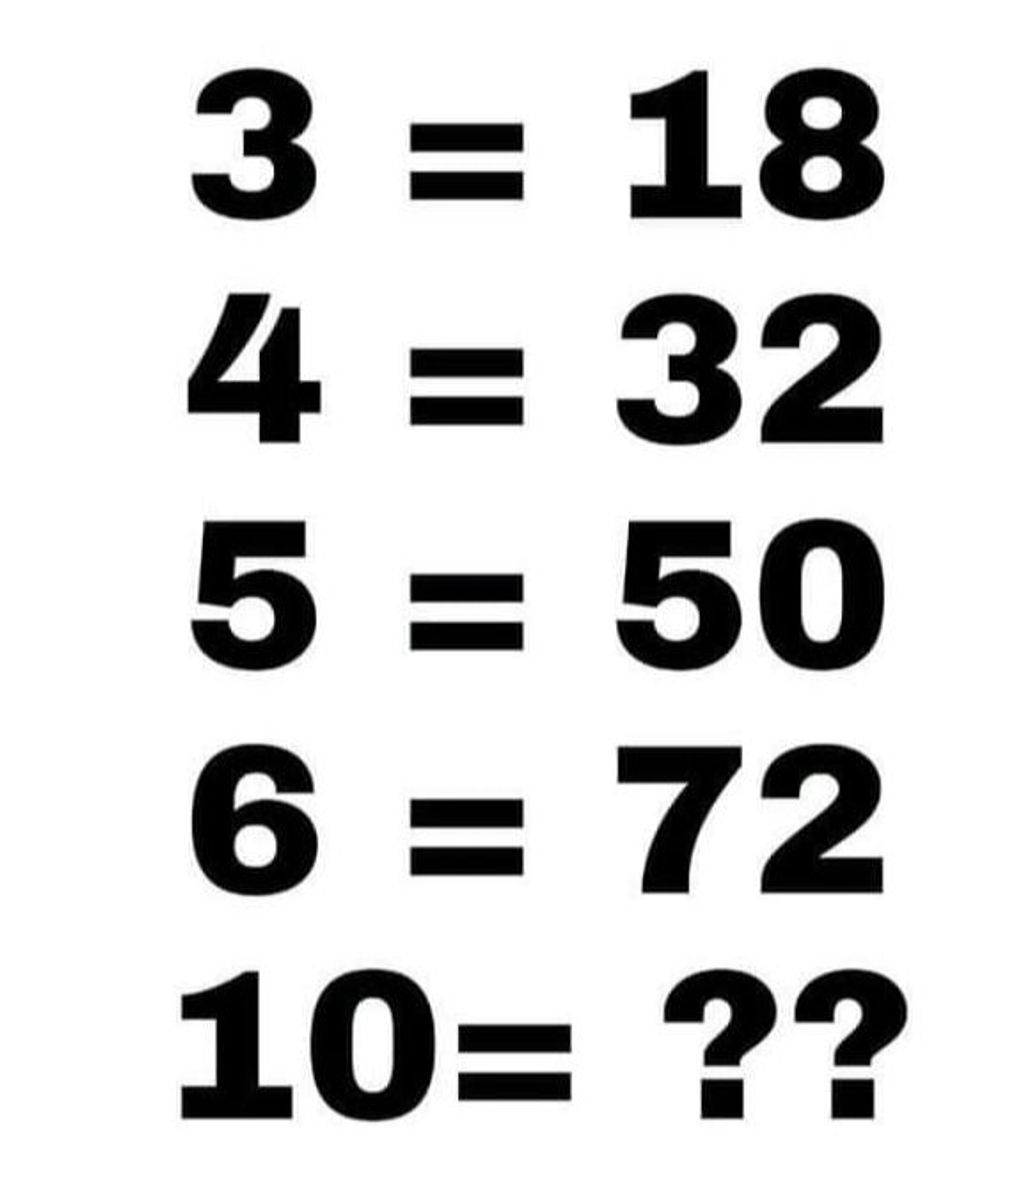 reto matematico secuencia de numeros